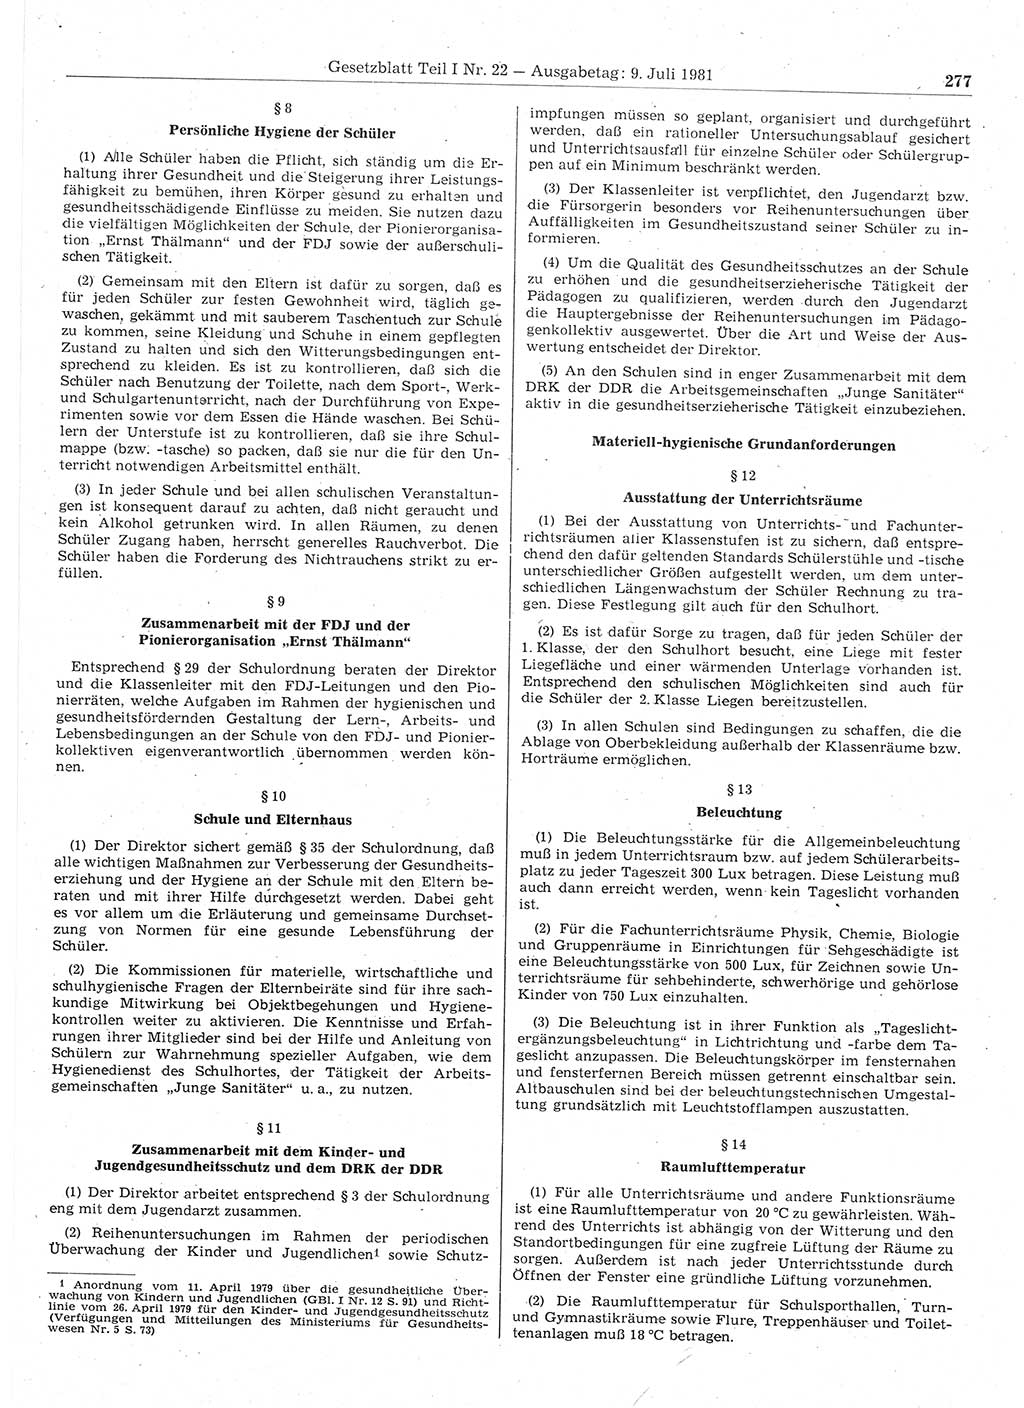 Gesetzblatt (GBl.) der Deutschen Demokratischen Republik (DDR) Teil Ⅰ 1981, Seite 277 (GBl. DDR Ⅰ 1981, S. 277)